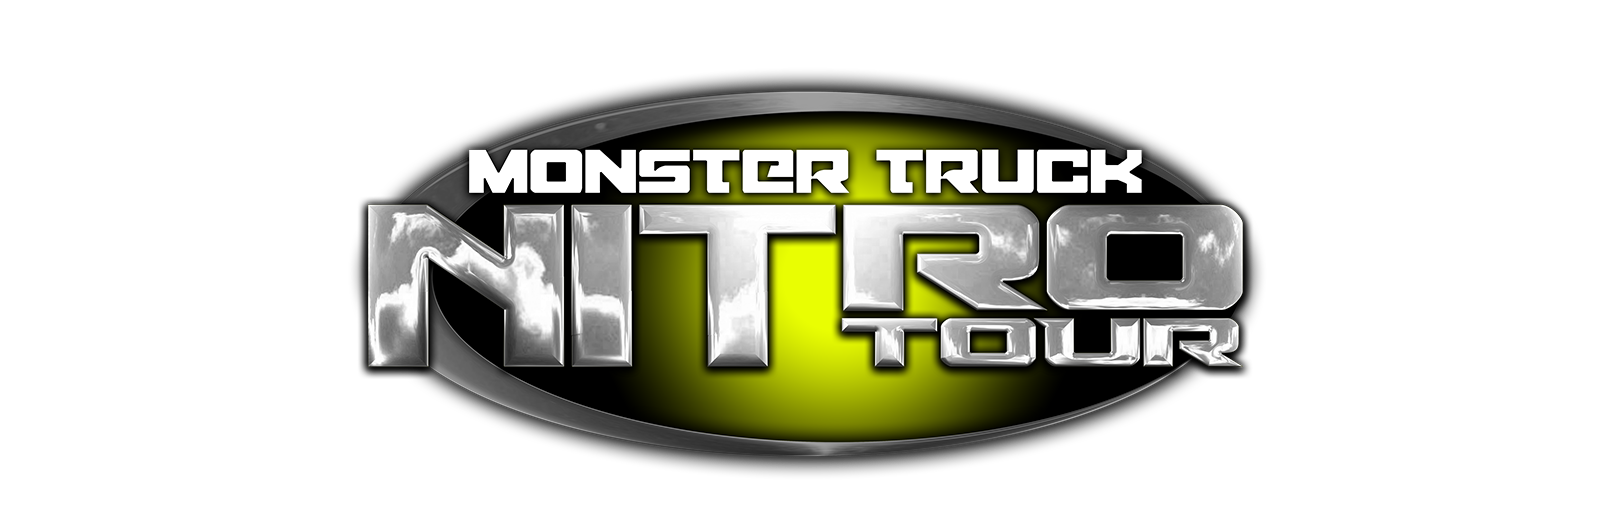 Monster Truck Nitro Tour Glow Show